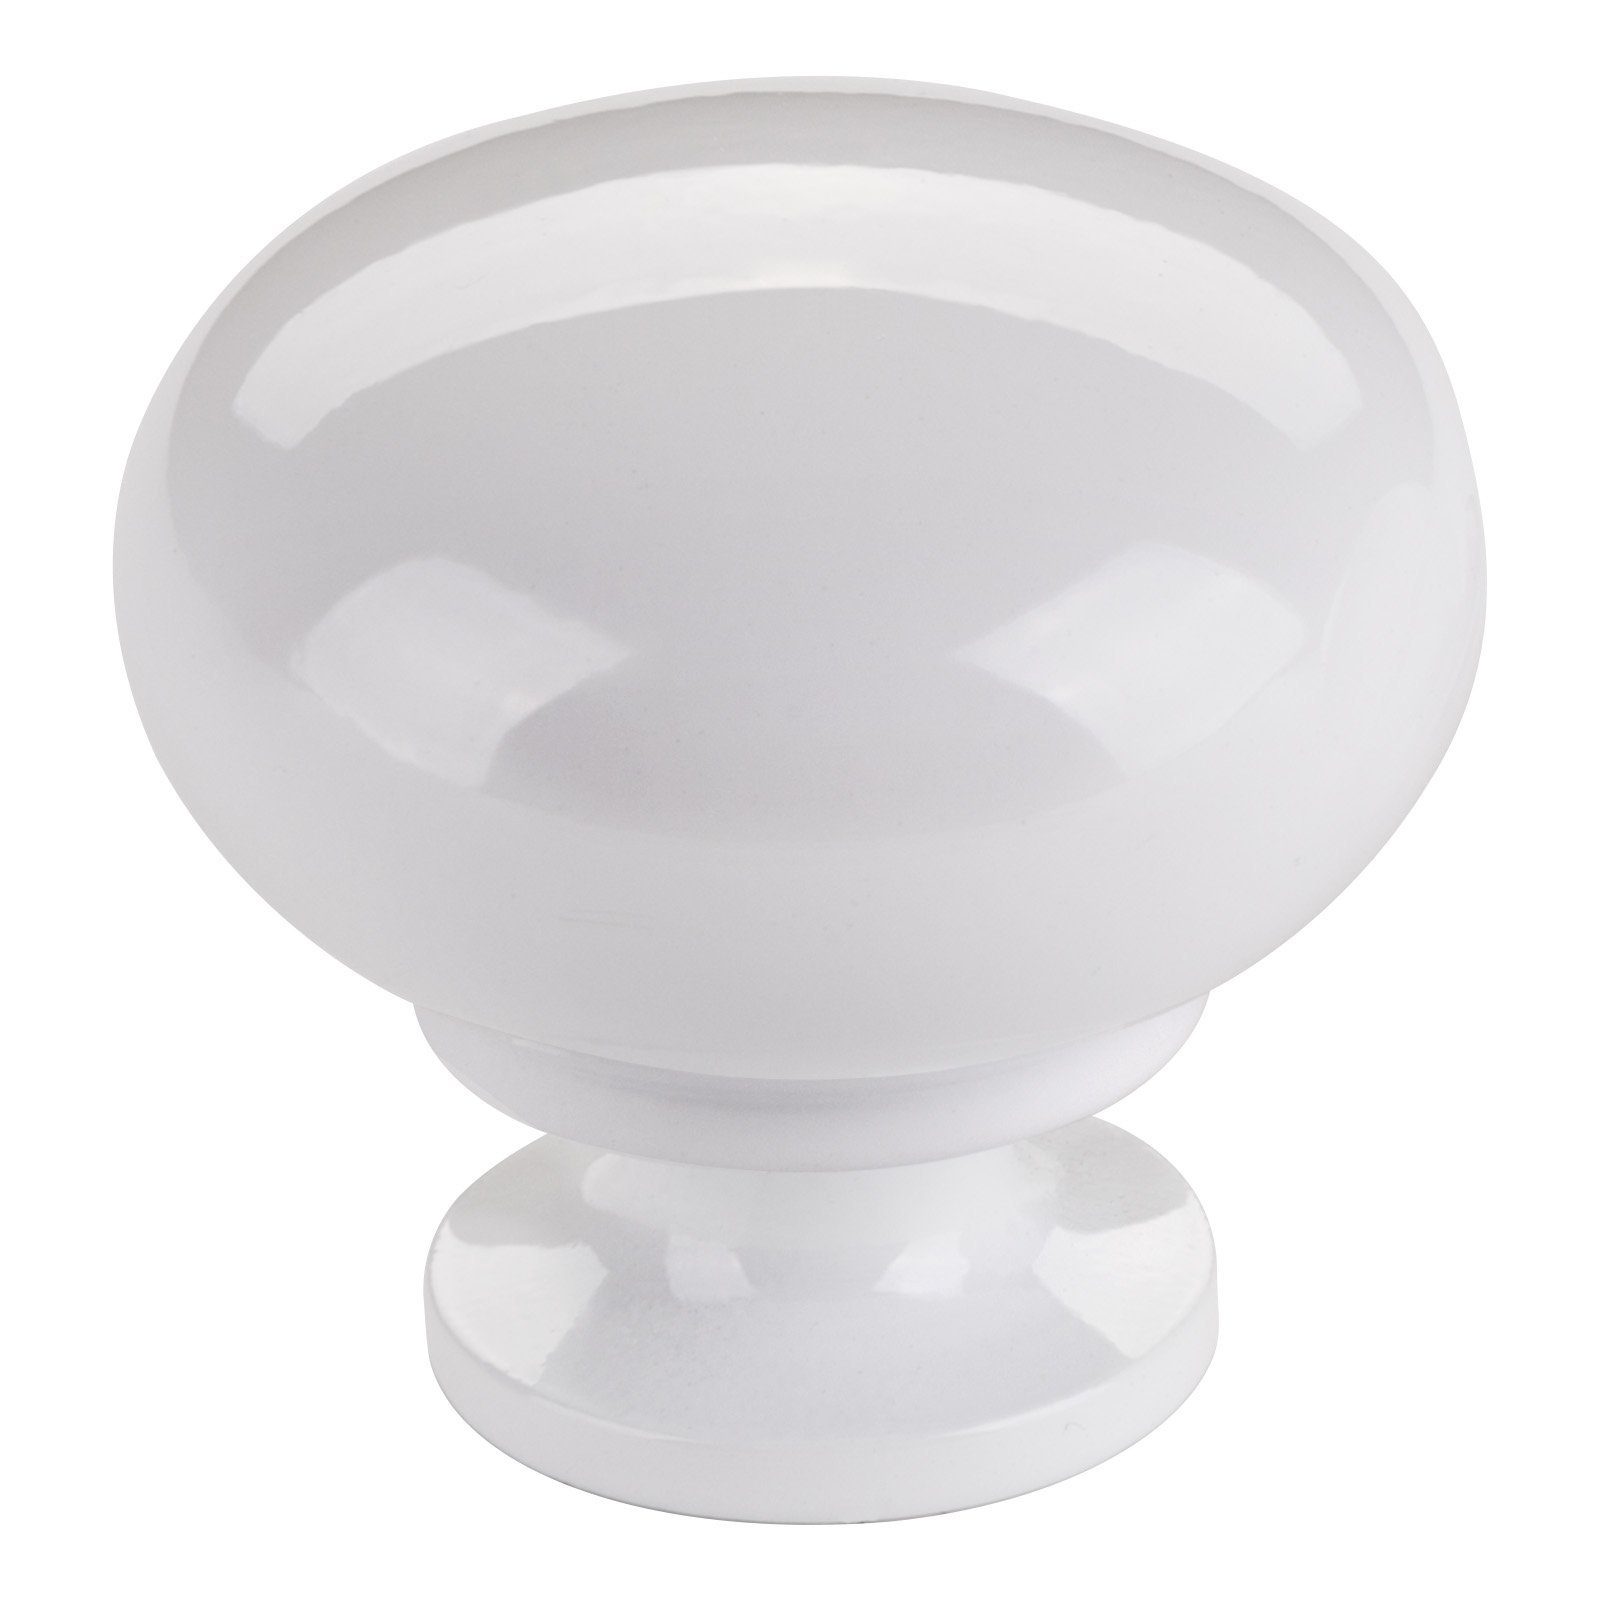 SO-TECH® Möbelbeschlag Schrankknopf OSCAR Ø 32,5 mm rund (1 St), weiß glänzend inkl. Befestigungsschraube